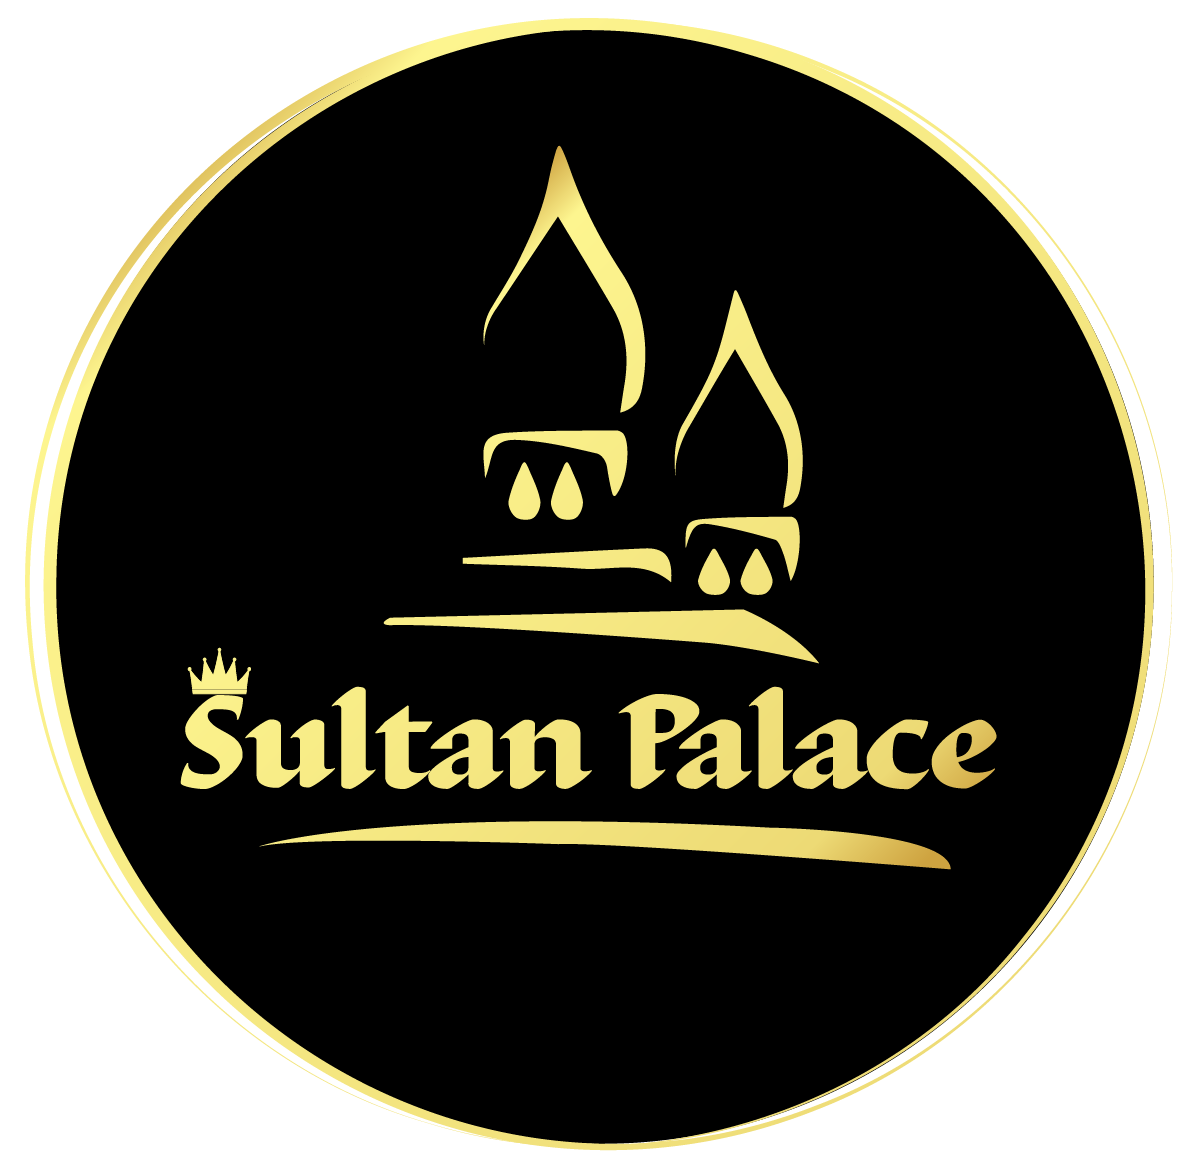 SultanPalace